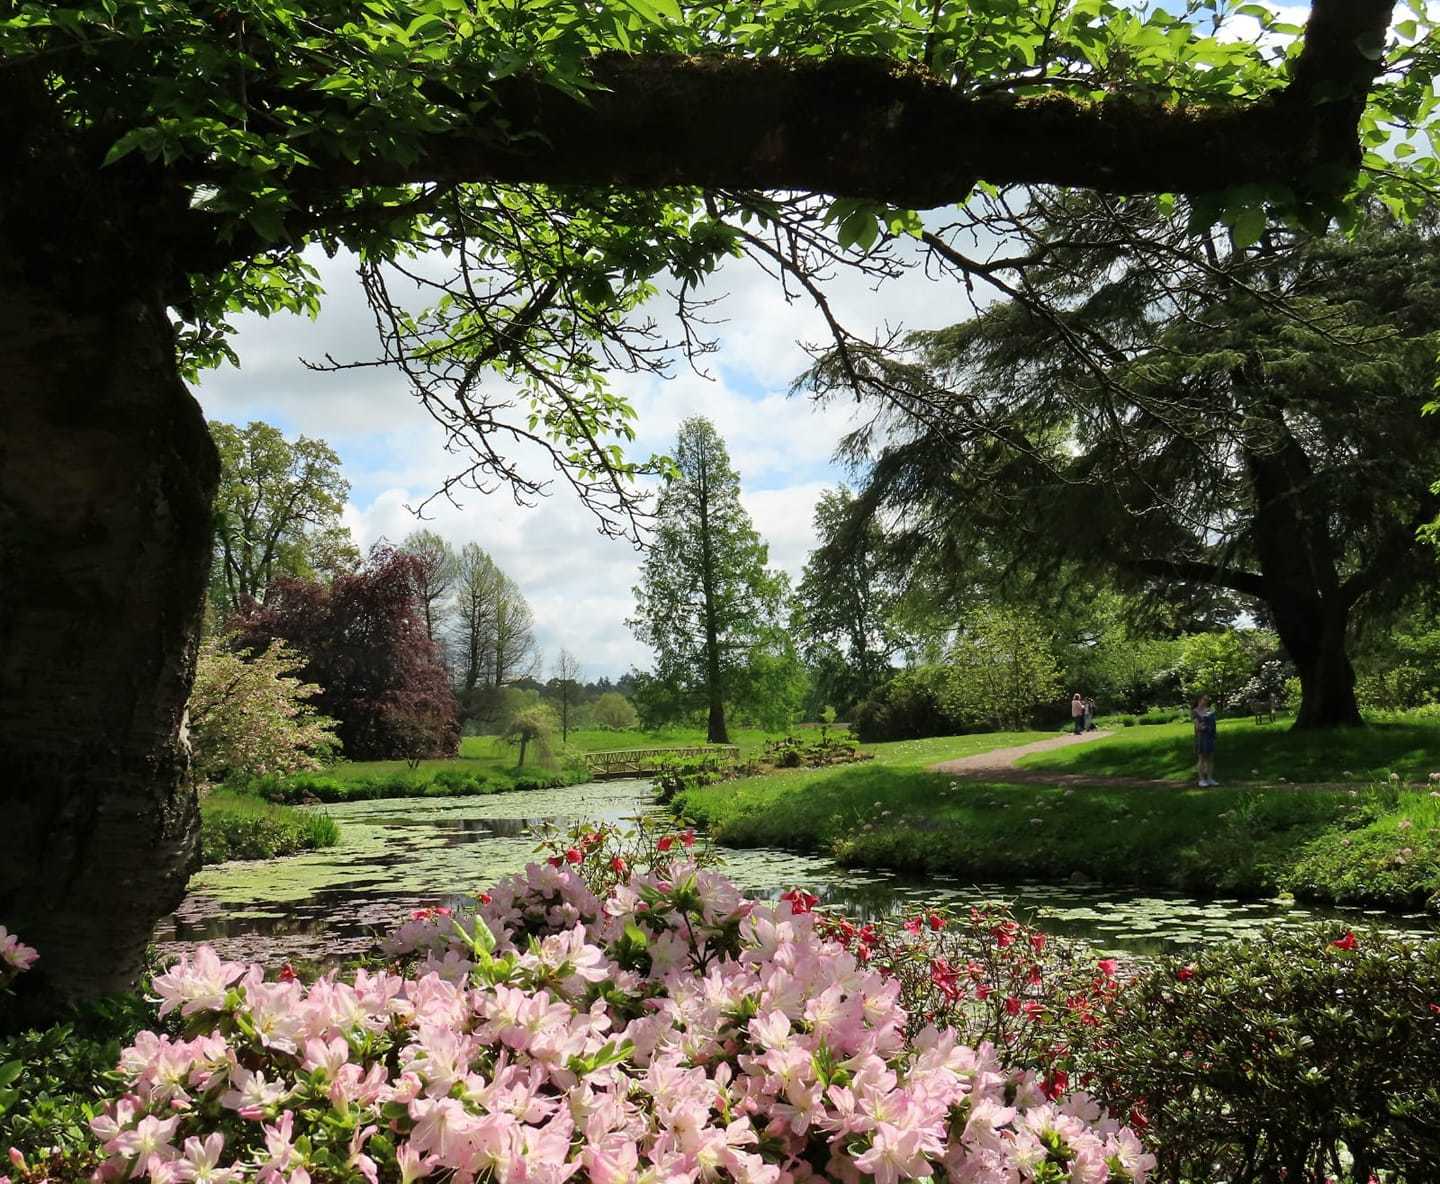 Cholmondeley Castle Gardens by Suzy Makin